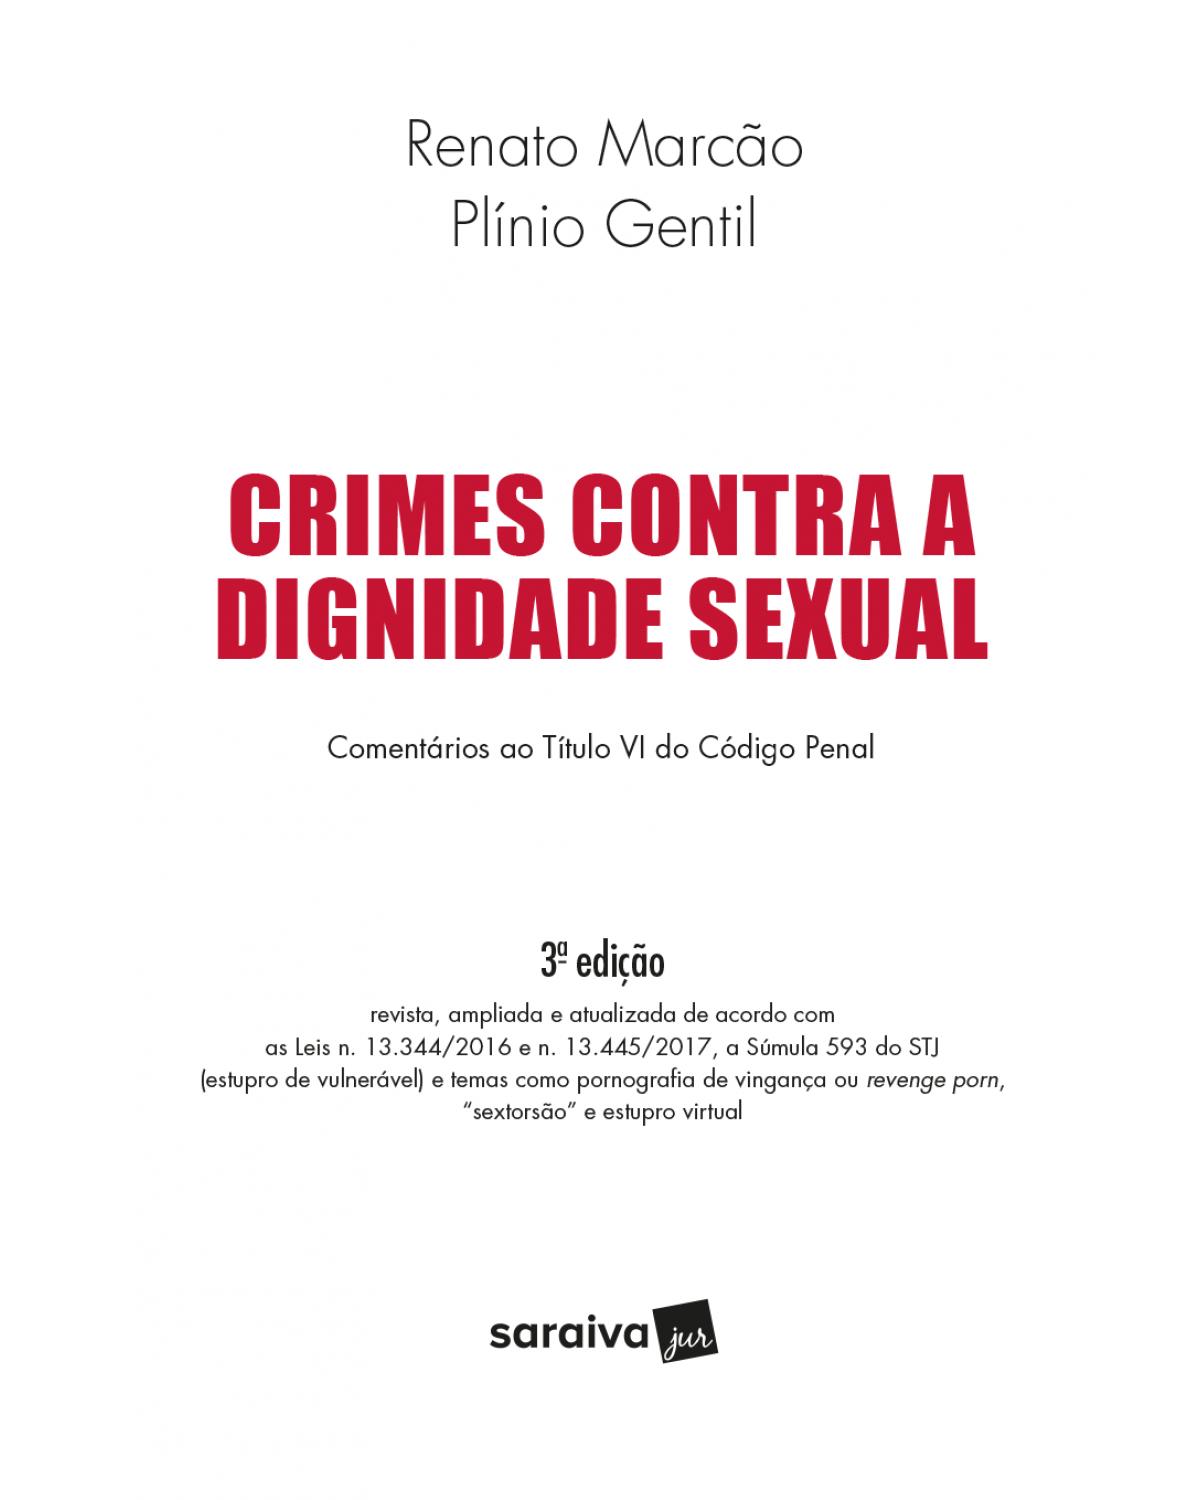 Crimes contra a dignidade sexual - comentários ao título VI do código penal - 3ª Edição | 2018